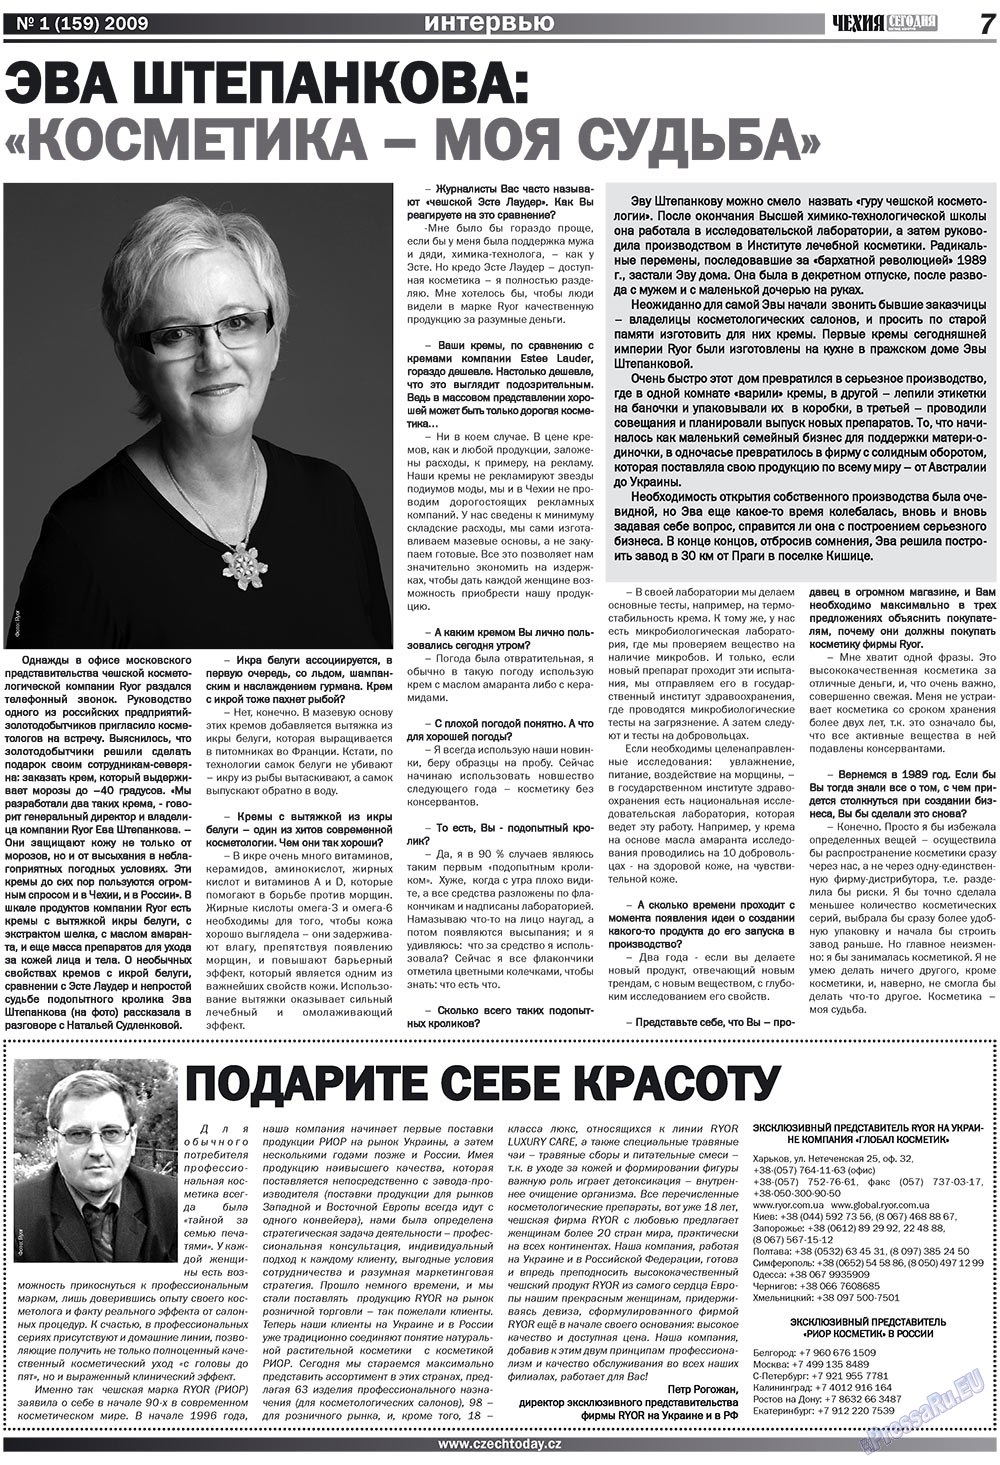 Chehia segodnja (Zeitschrift). 2009 Jahr, Ausgabe 1, Seite 7